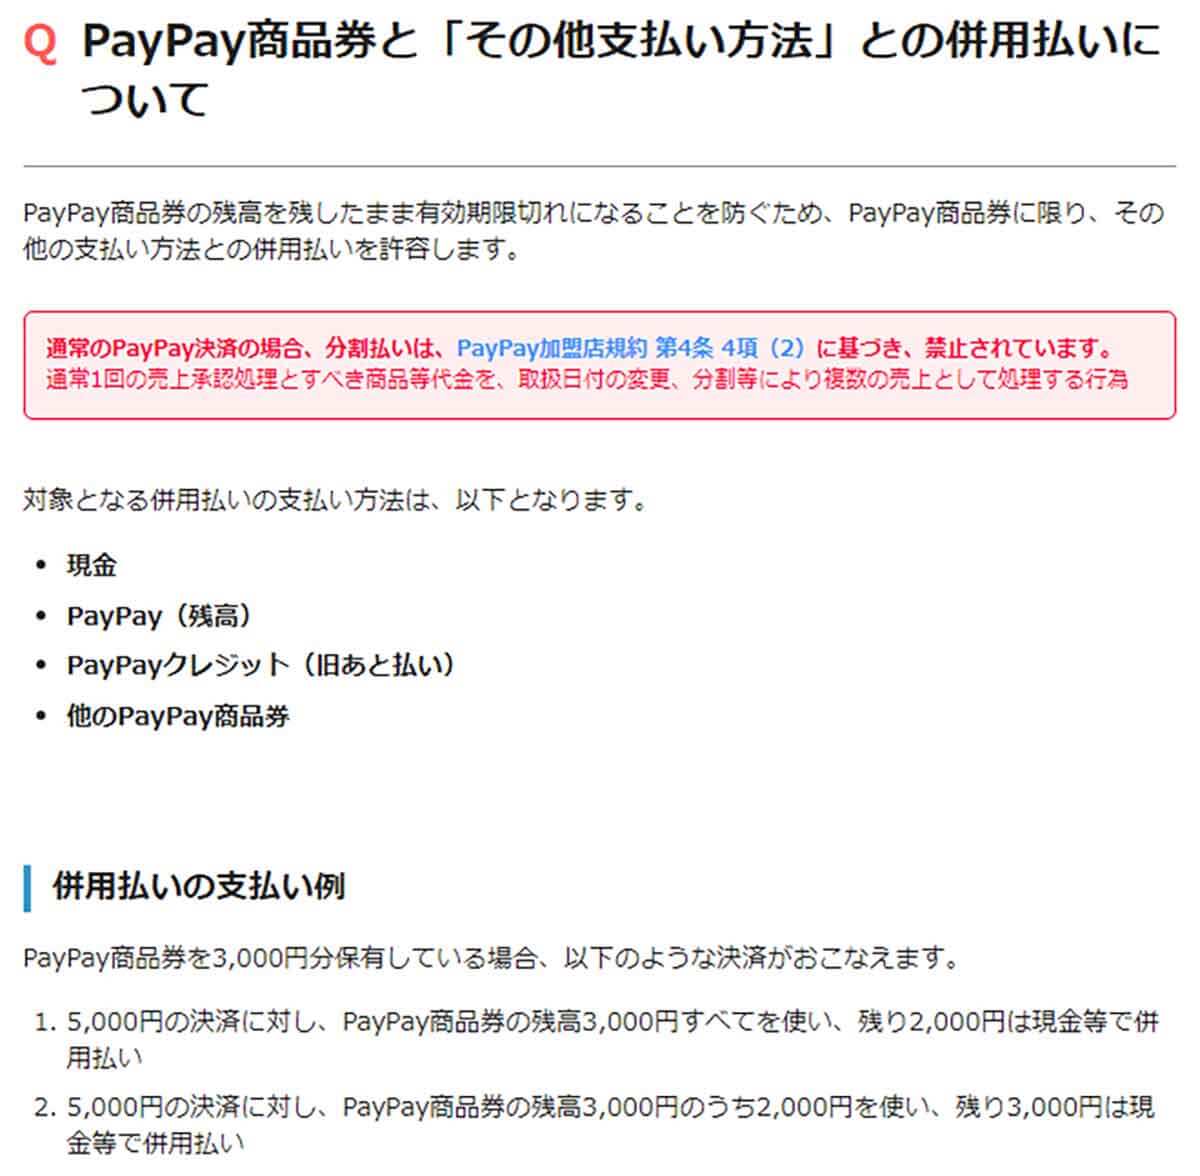 PayPay商品券と「その他支払い方法」との併用払いについて